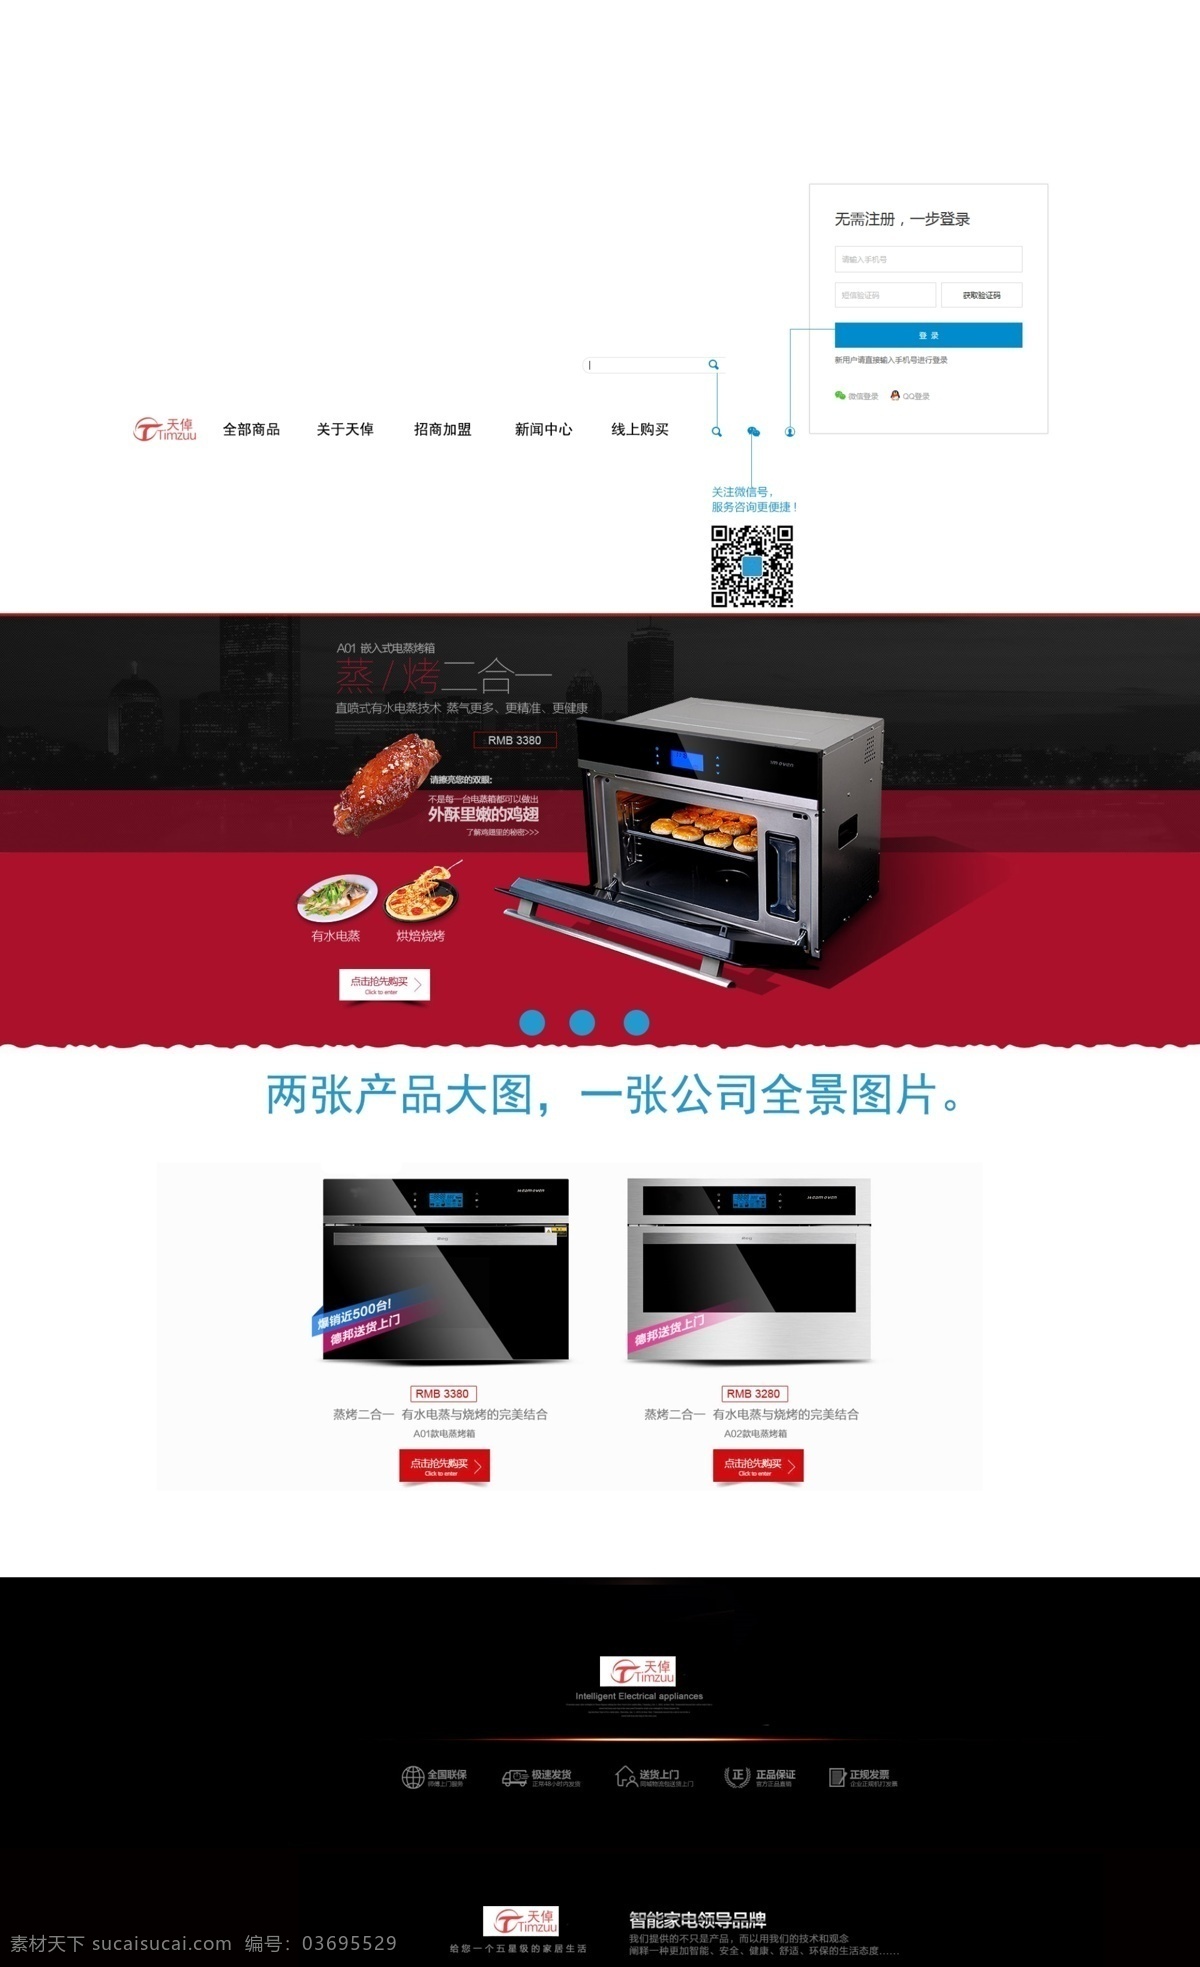 蒸 烤箱 天猫 首页 官网排版结构 描述 烤 一体机 原创设计 原创网页设计